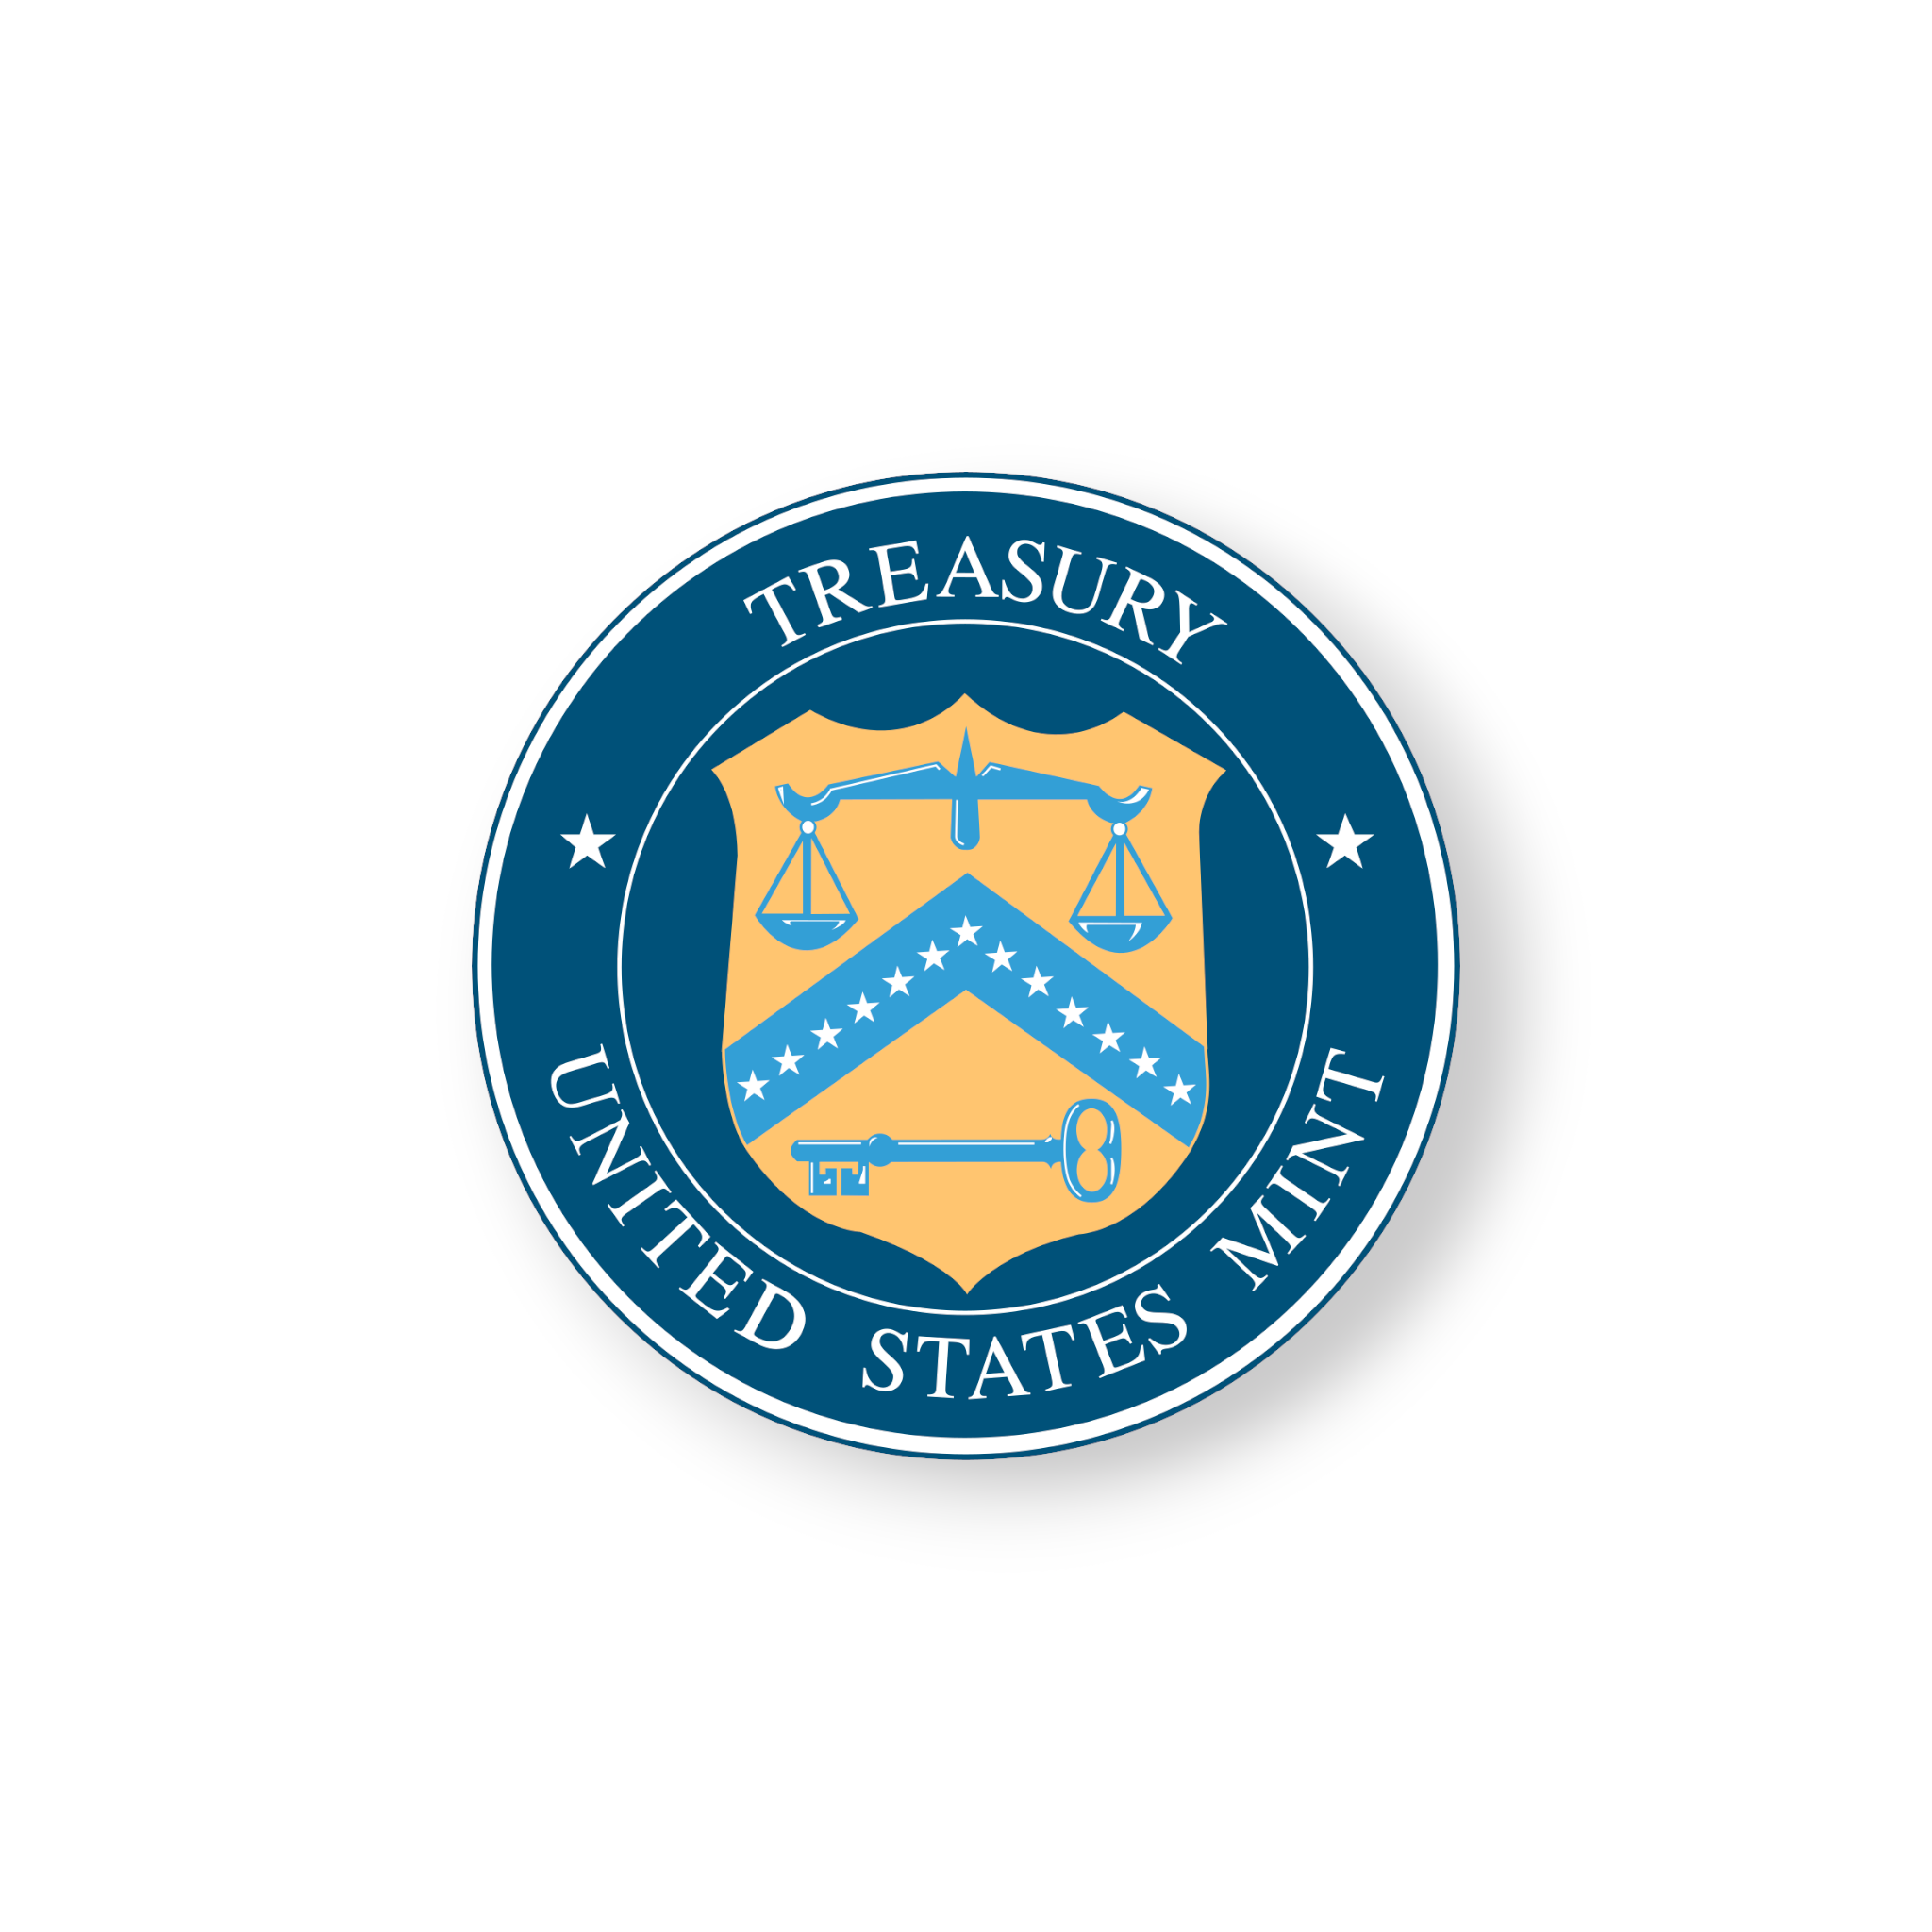 United States Mint Logo